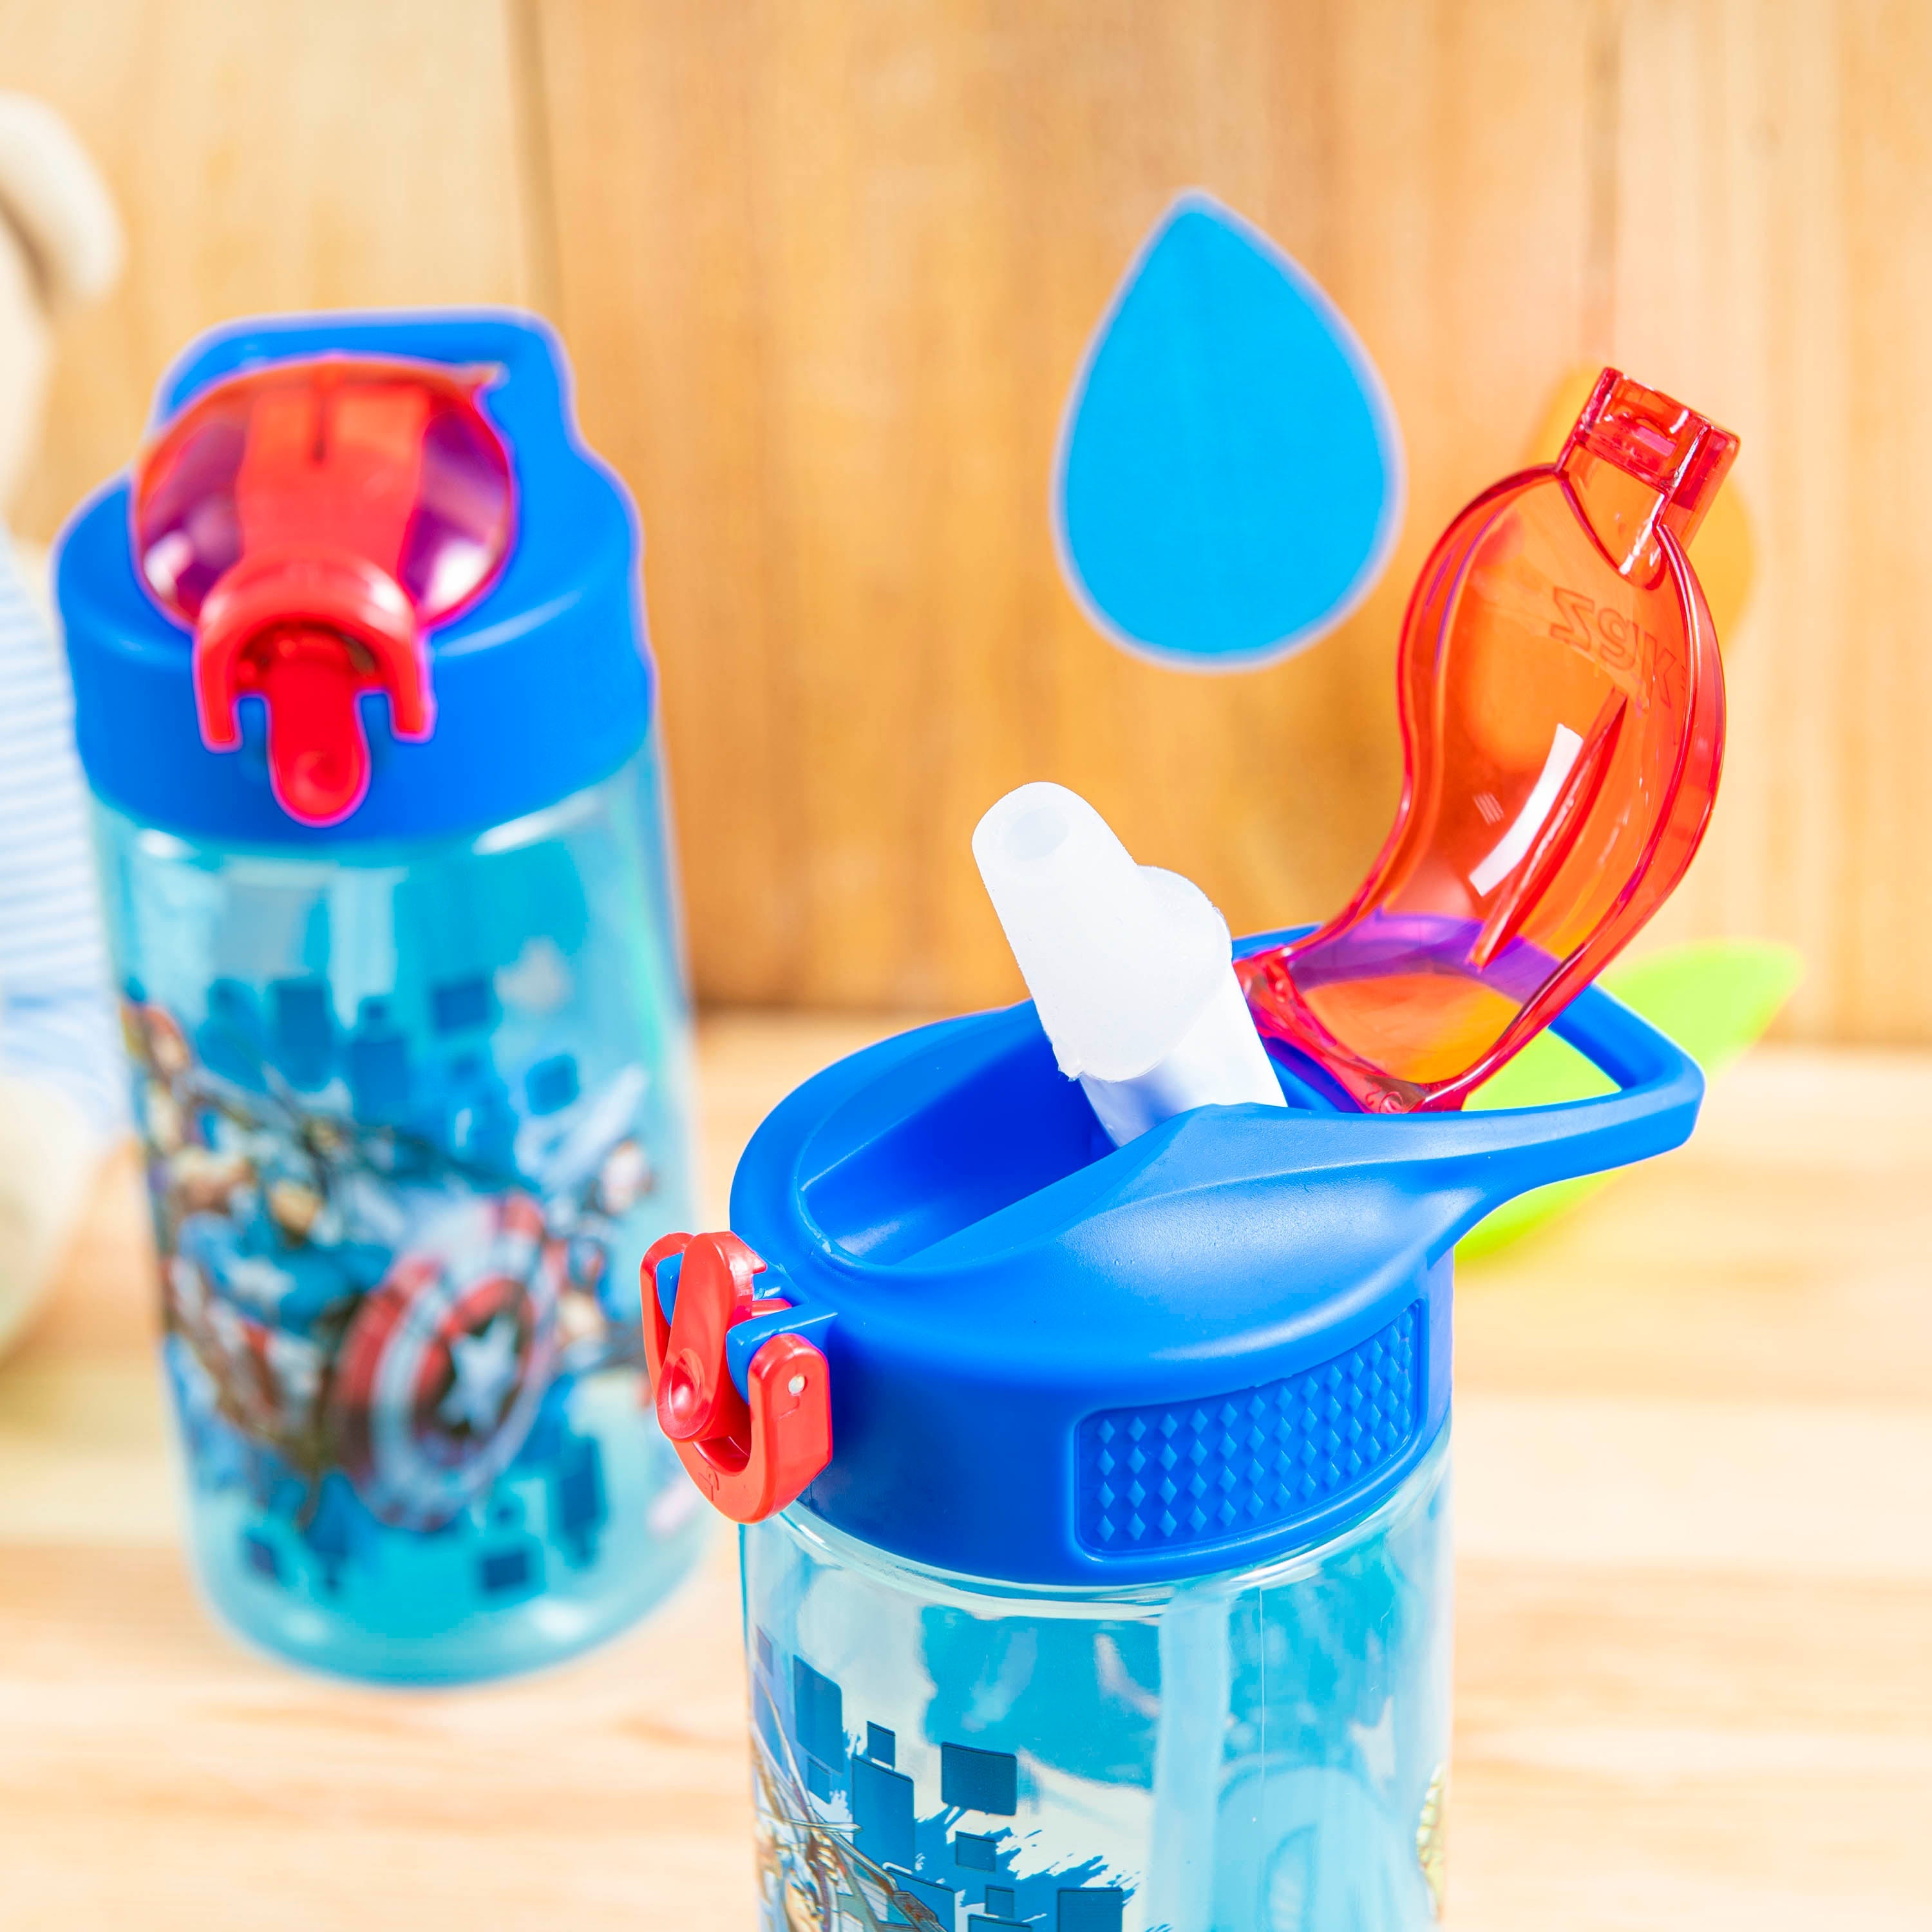 Zak Designs Bluey 16 Fluid Ounces Reusable Leakproof Plastic Water Bottle 